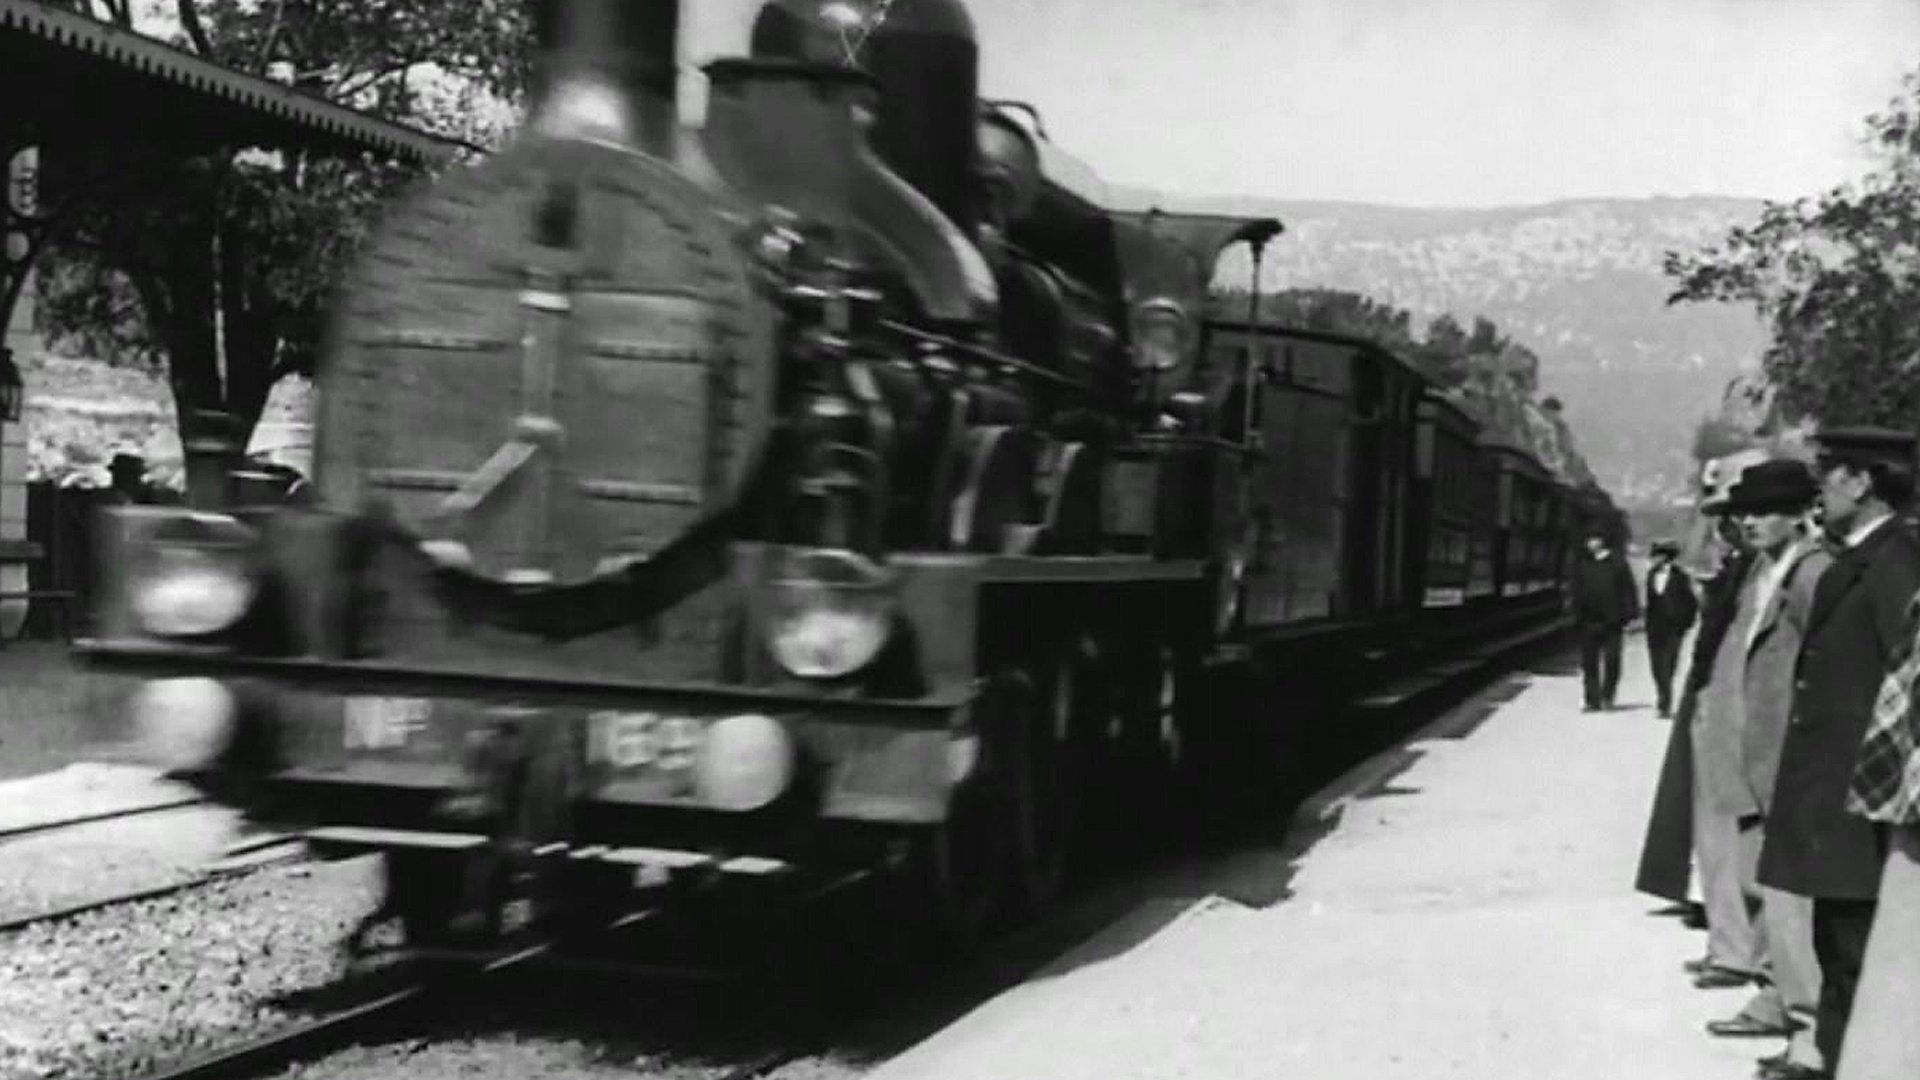 Lumiere Brothers, Lumiere's Train, 4K Treatment, BBC News, 1920x1080 Full HD Desktop